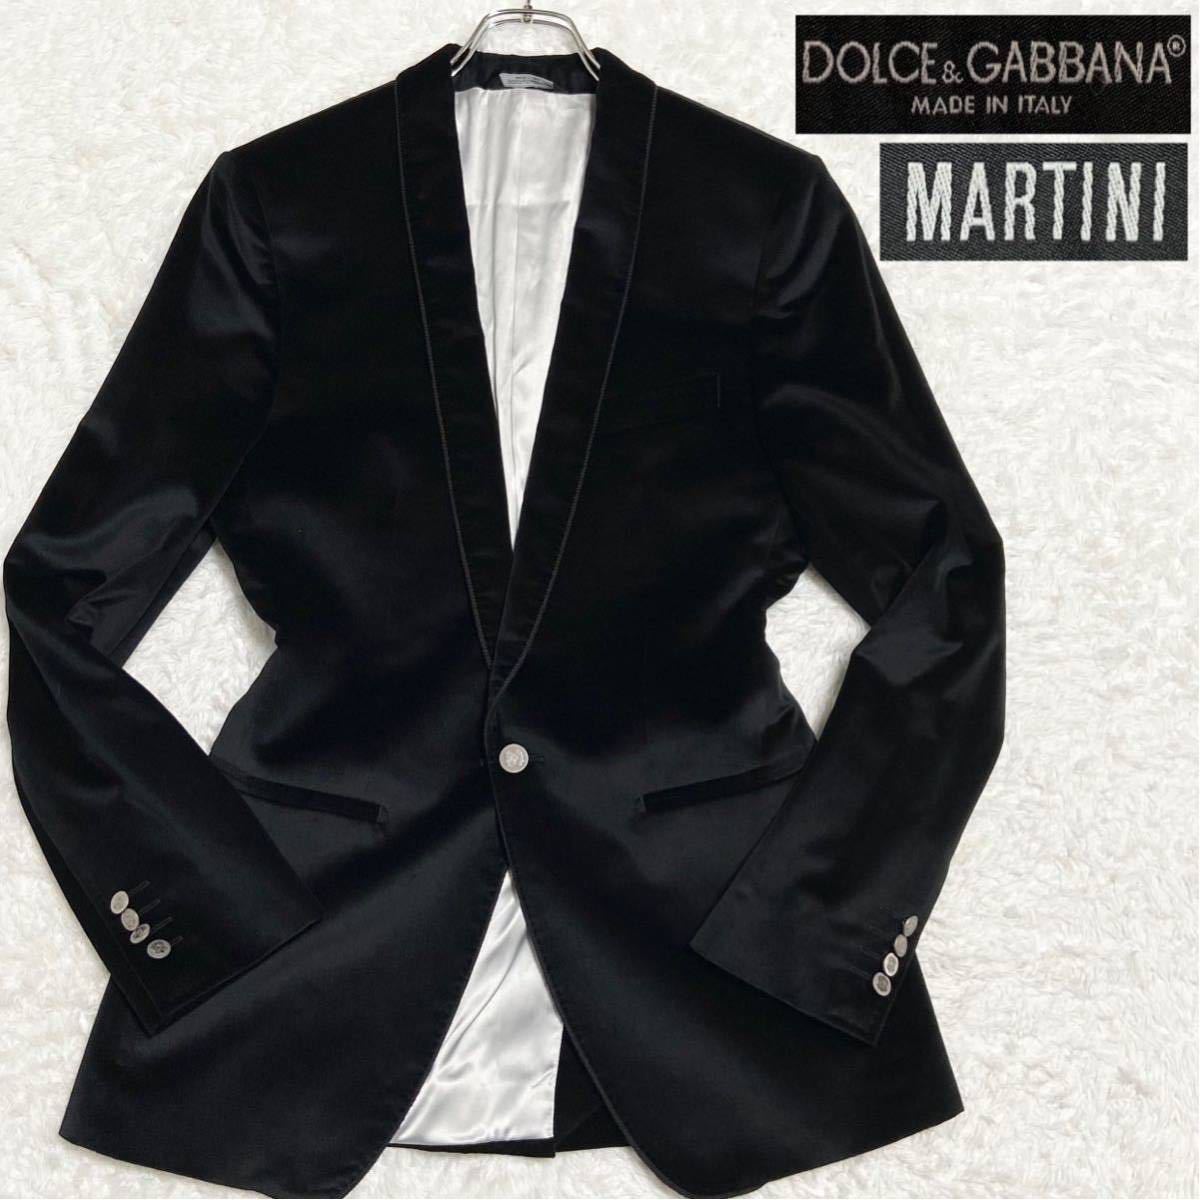 極上の一着 ドルガバ マルティニ DOLCE&GABBANA D&G MARTINI ベロア テーラードジャケット パイピング 銀ボタン ブラック 黒 フォーマル